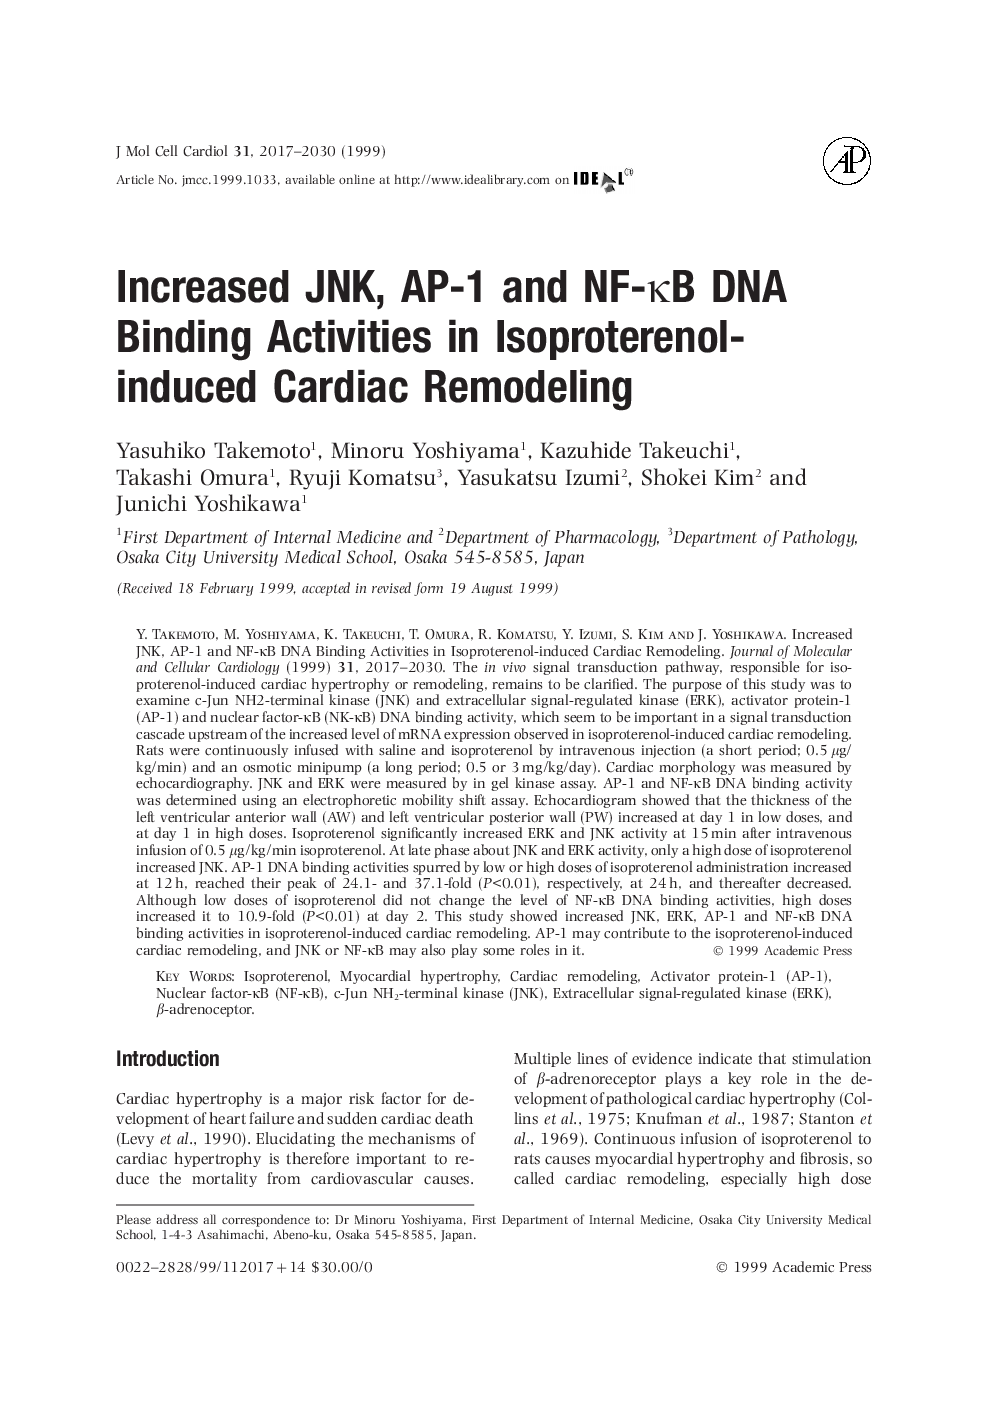 فعالیت‌های اتصال JNK، AP-1 و NF-kB DNA افزایش یافته در نوسازی قلبی ناشی از ایزوپروتونول 